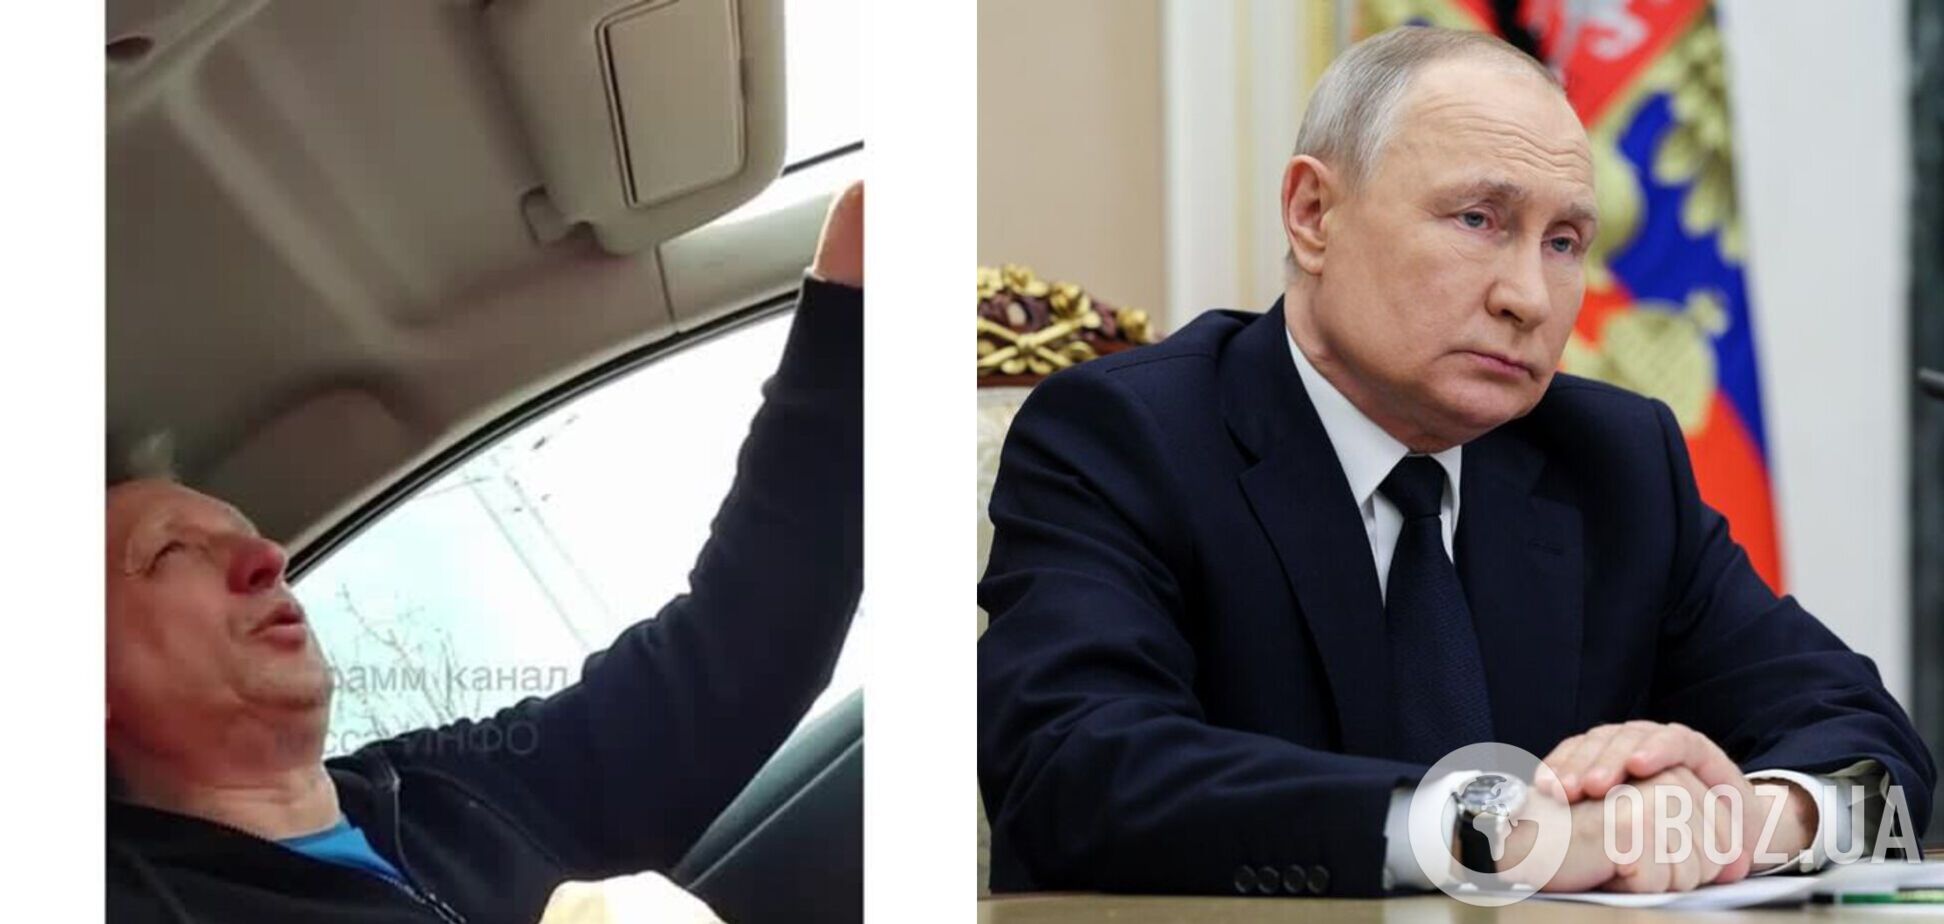 Розхвалив Путіна і виправдав зґвалтування окупантами українок: в Одесі таксист відзначився скандальними заявами і поплатився. Відео